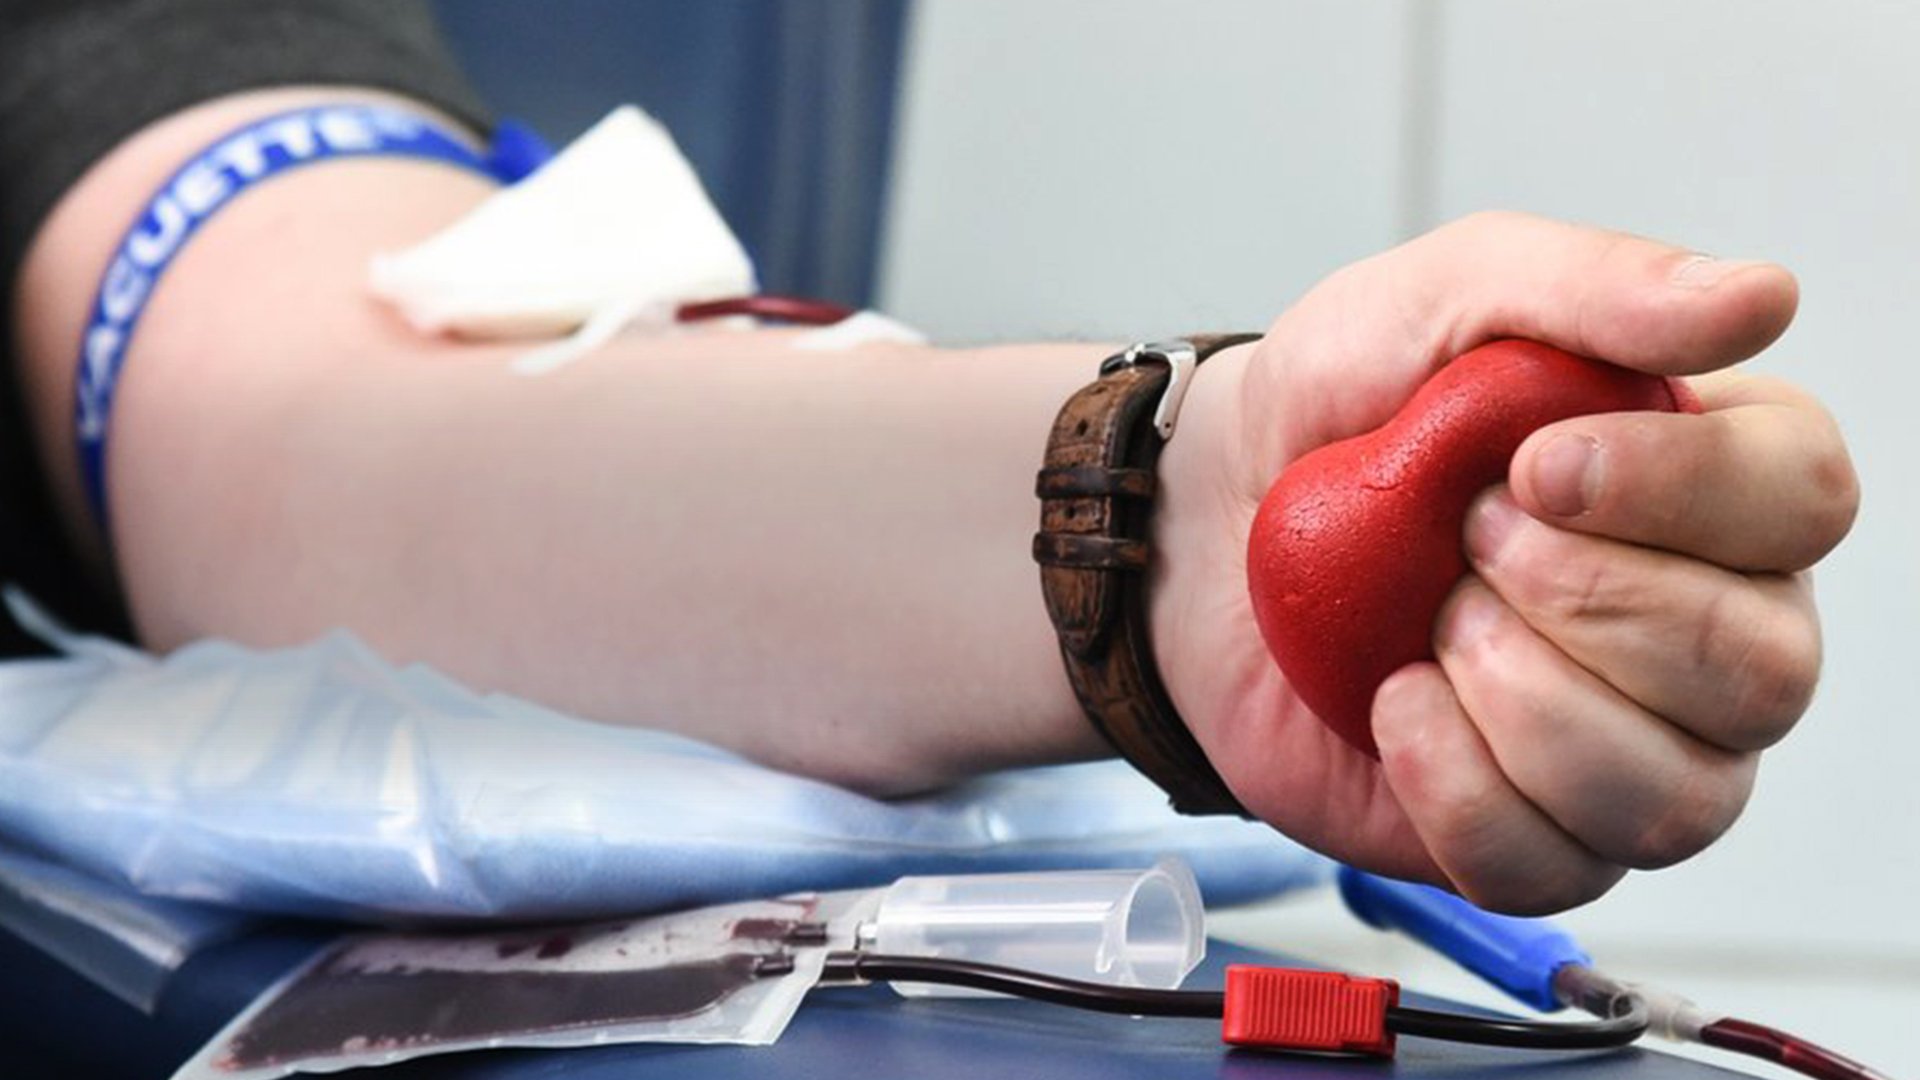 Основные принципы организации заготовки донорской крови и ее компонентов